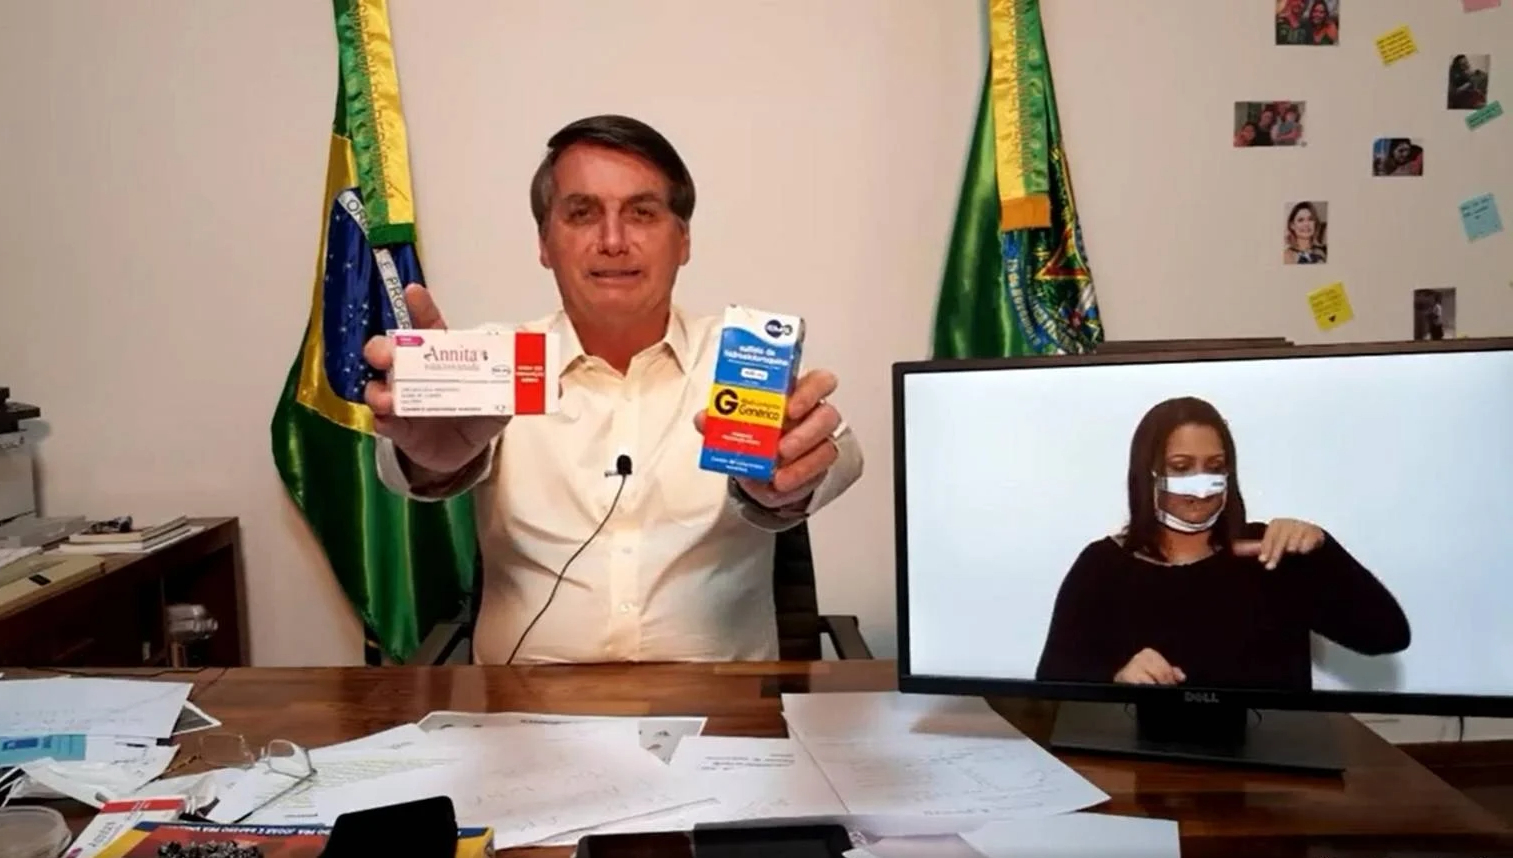 Presidente Jair Bolsonaro também teria violado norma da Anvisa que impede divulgar informações falsas sobre medicamentos tarja preta ou vermelha (Reprodução/Facebook)